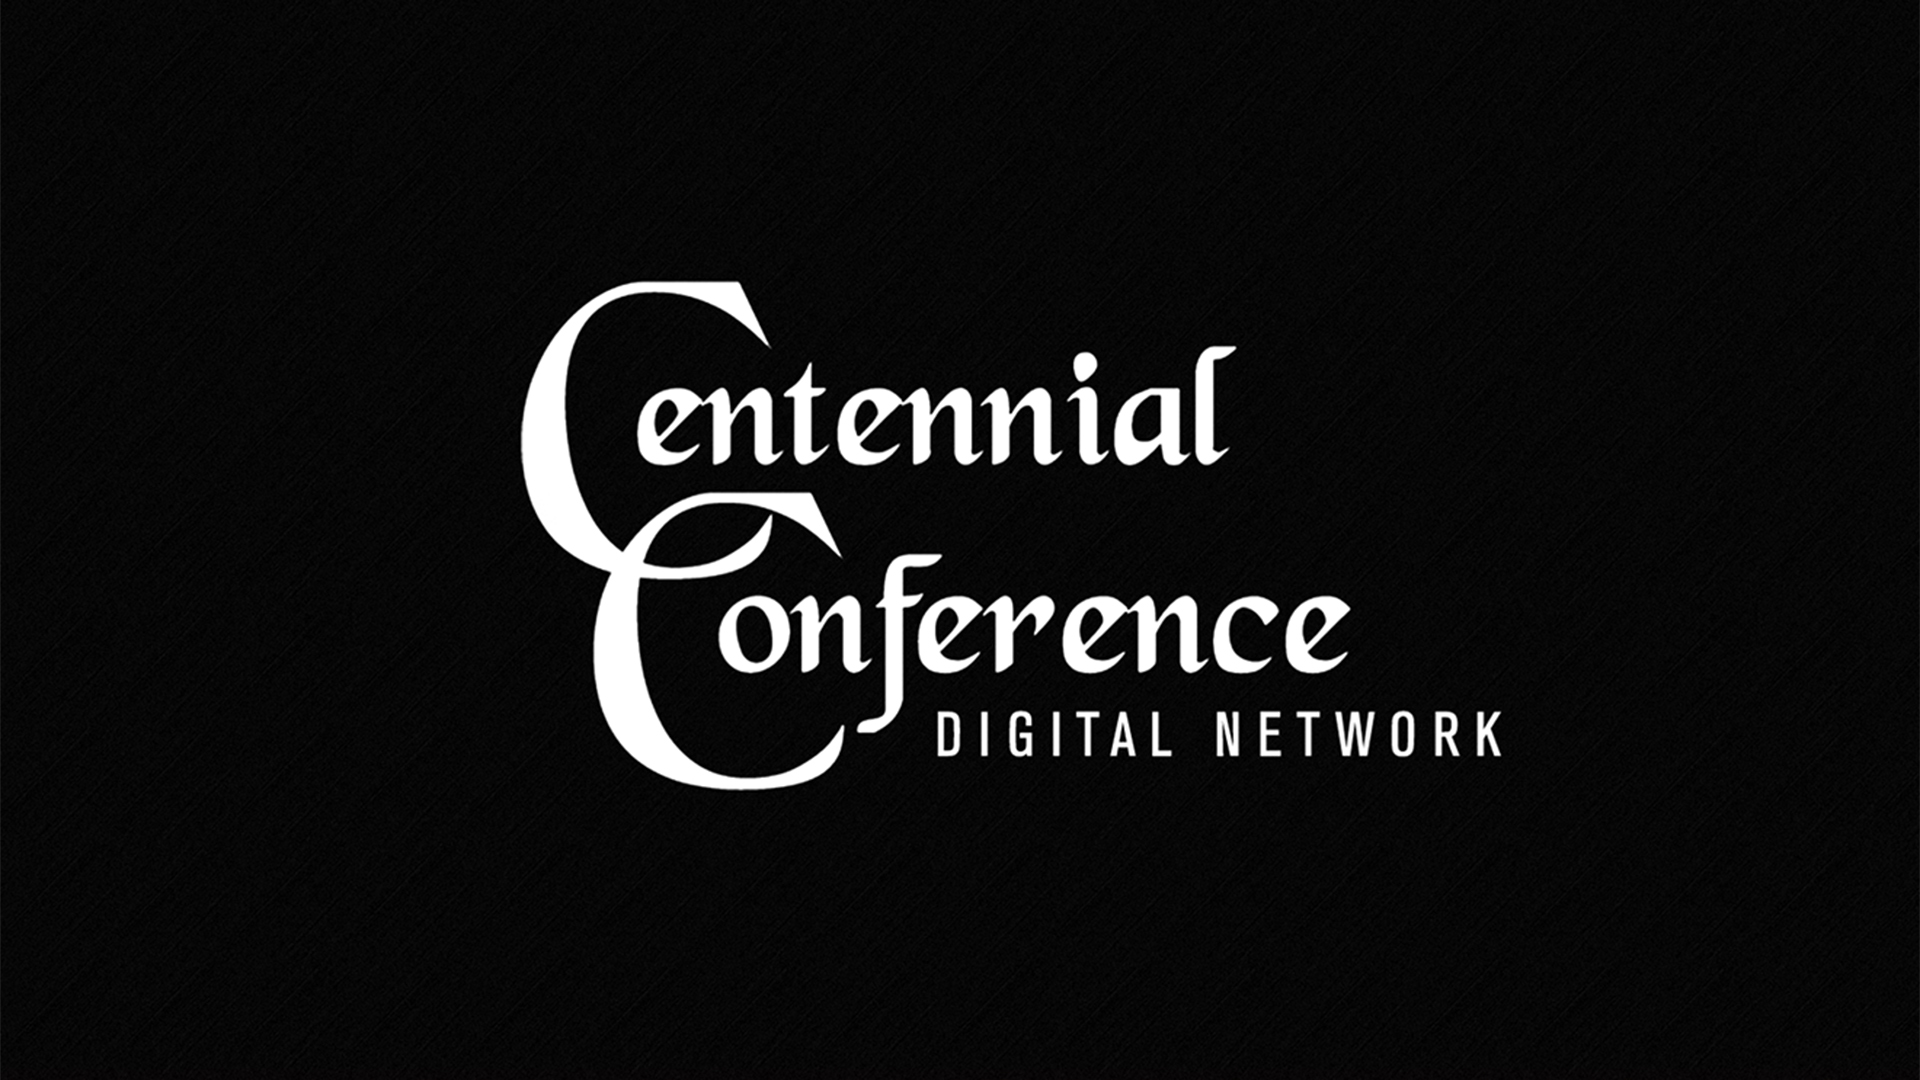 Centennial Conference Digital Network